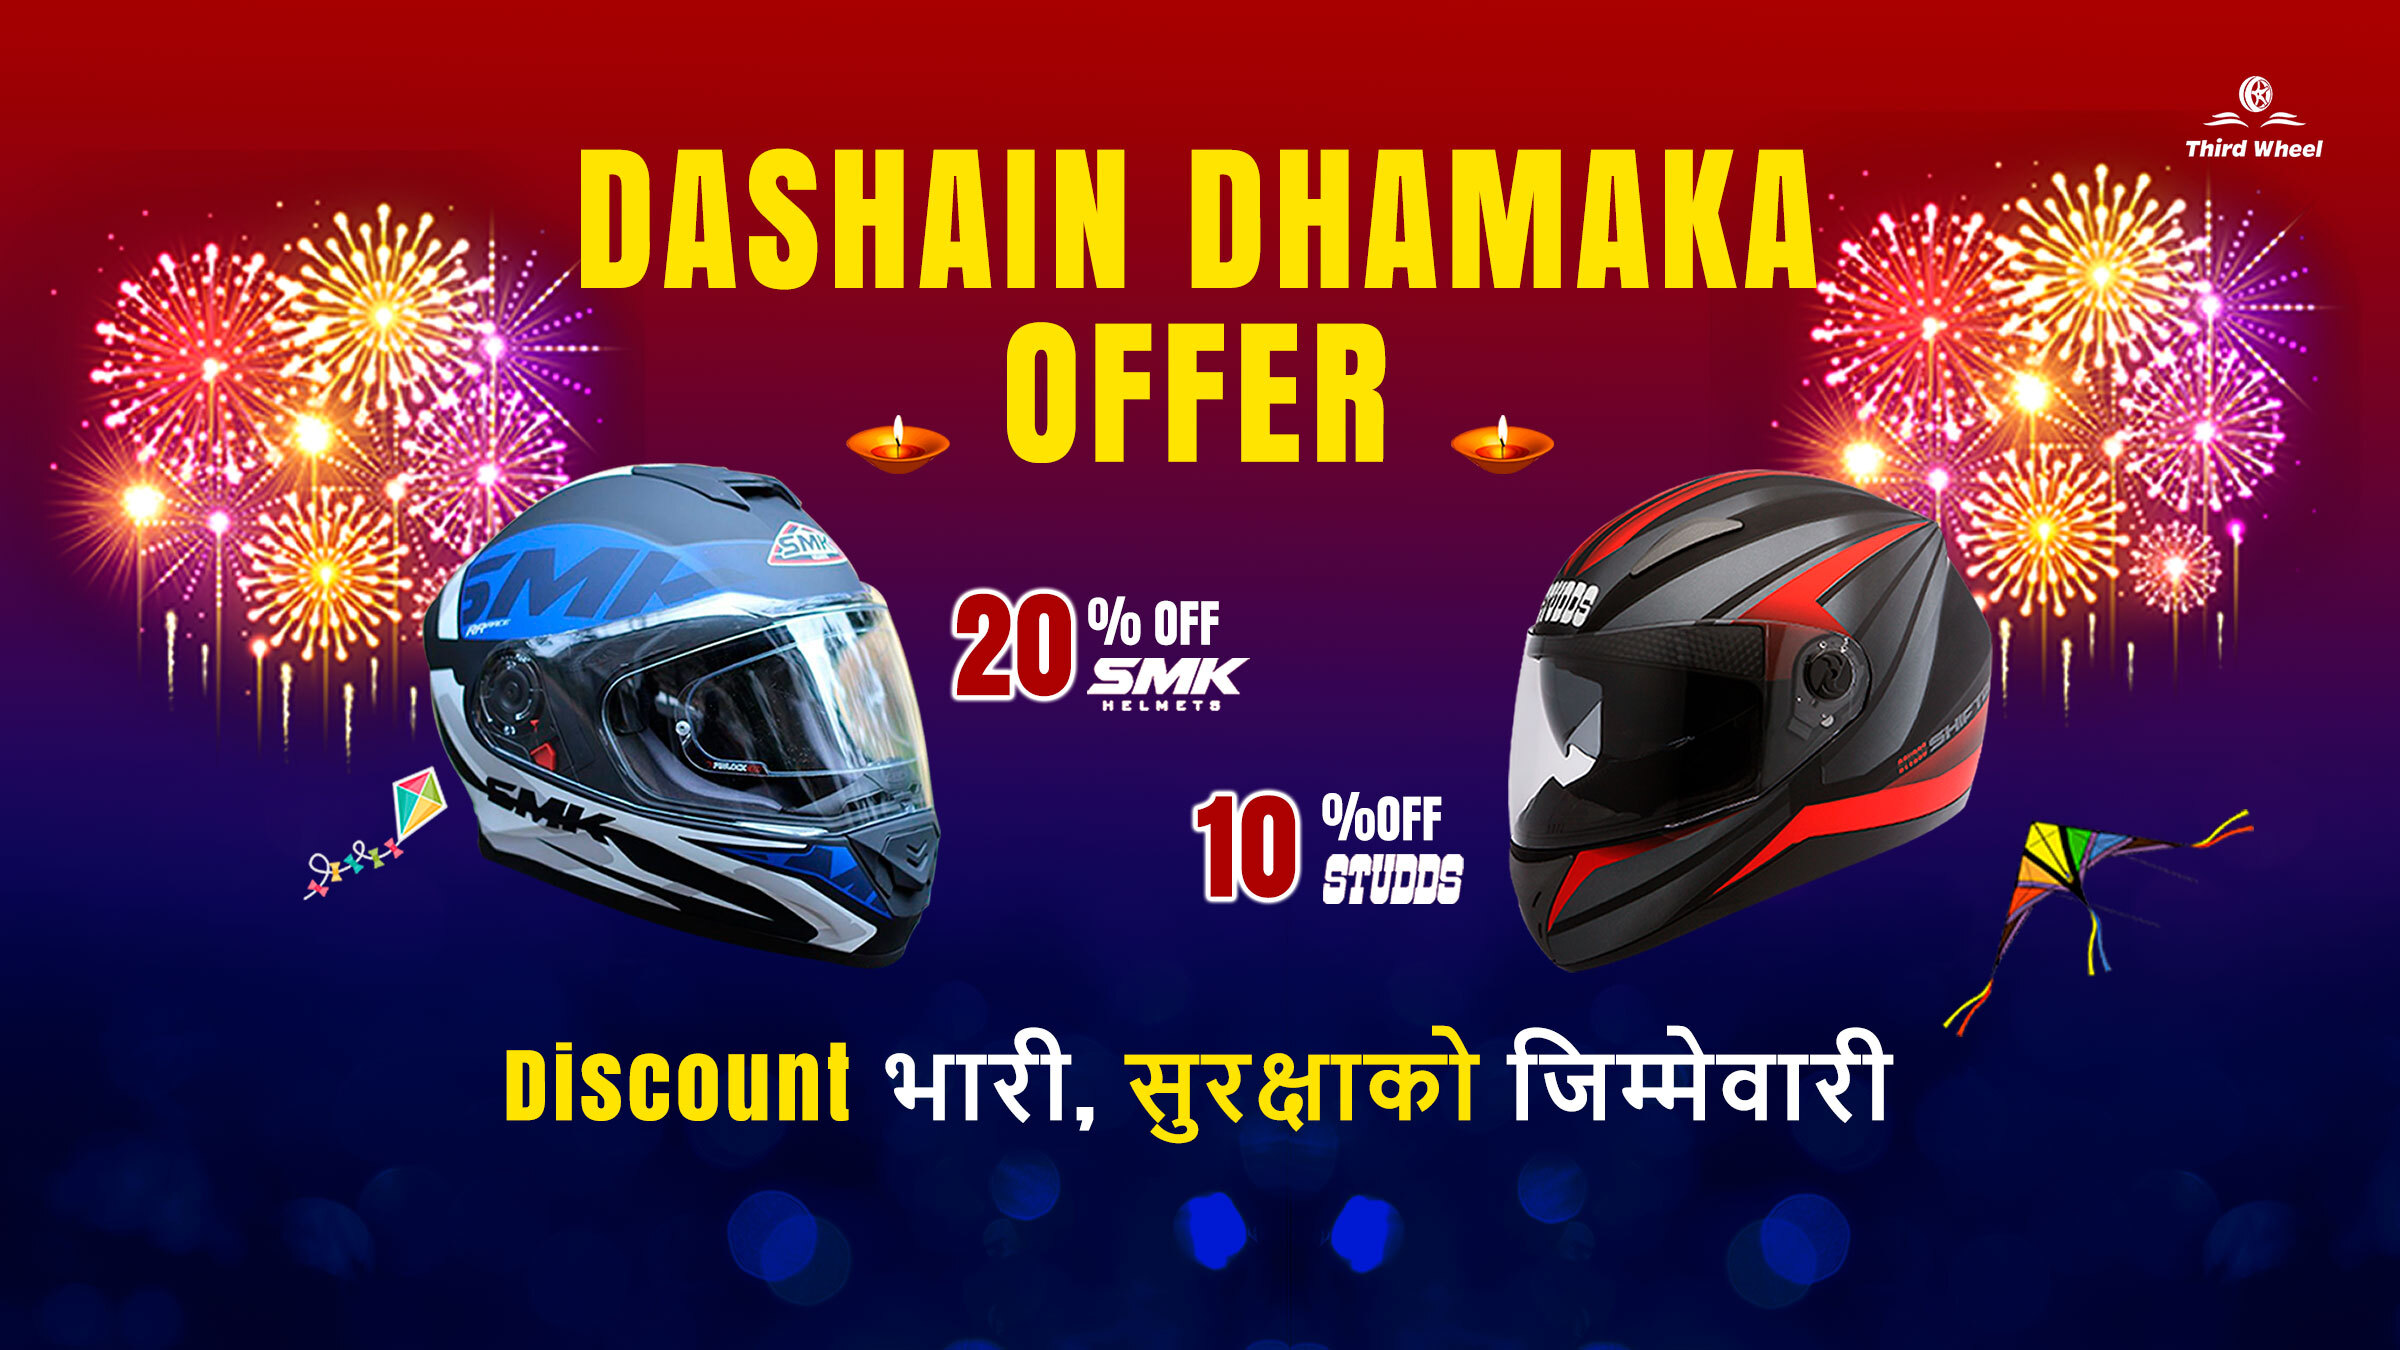 Dashain Dhammaka Offer on SMK & STUDDS Helmets